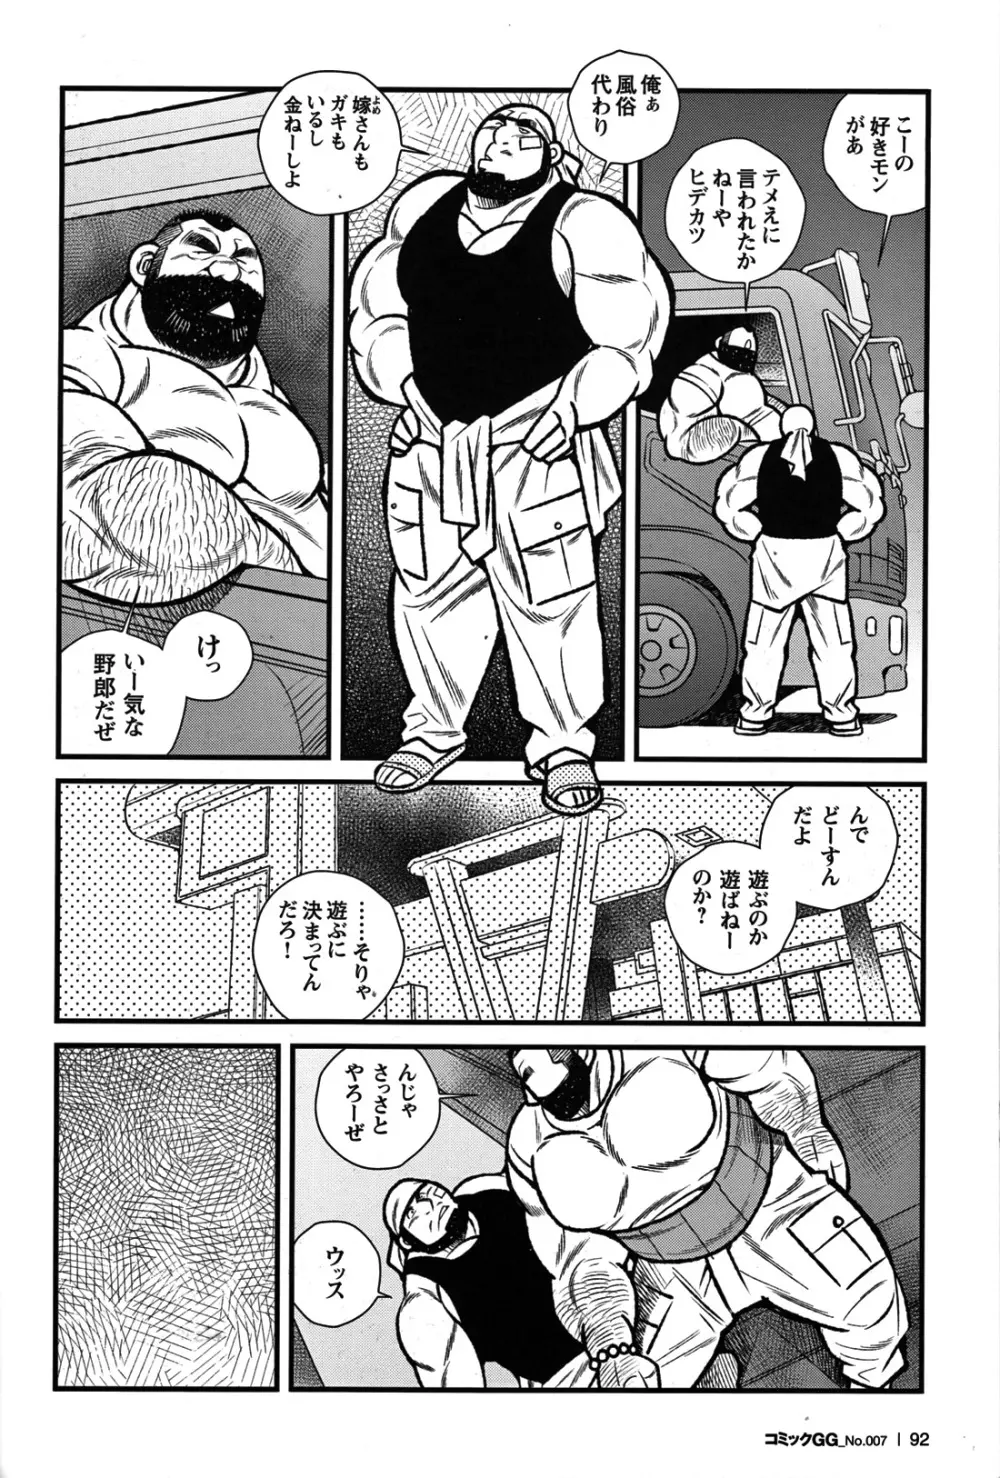 Comic G-men Gaho No.07 79ページ